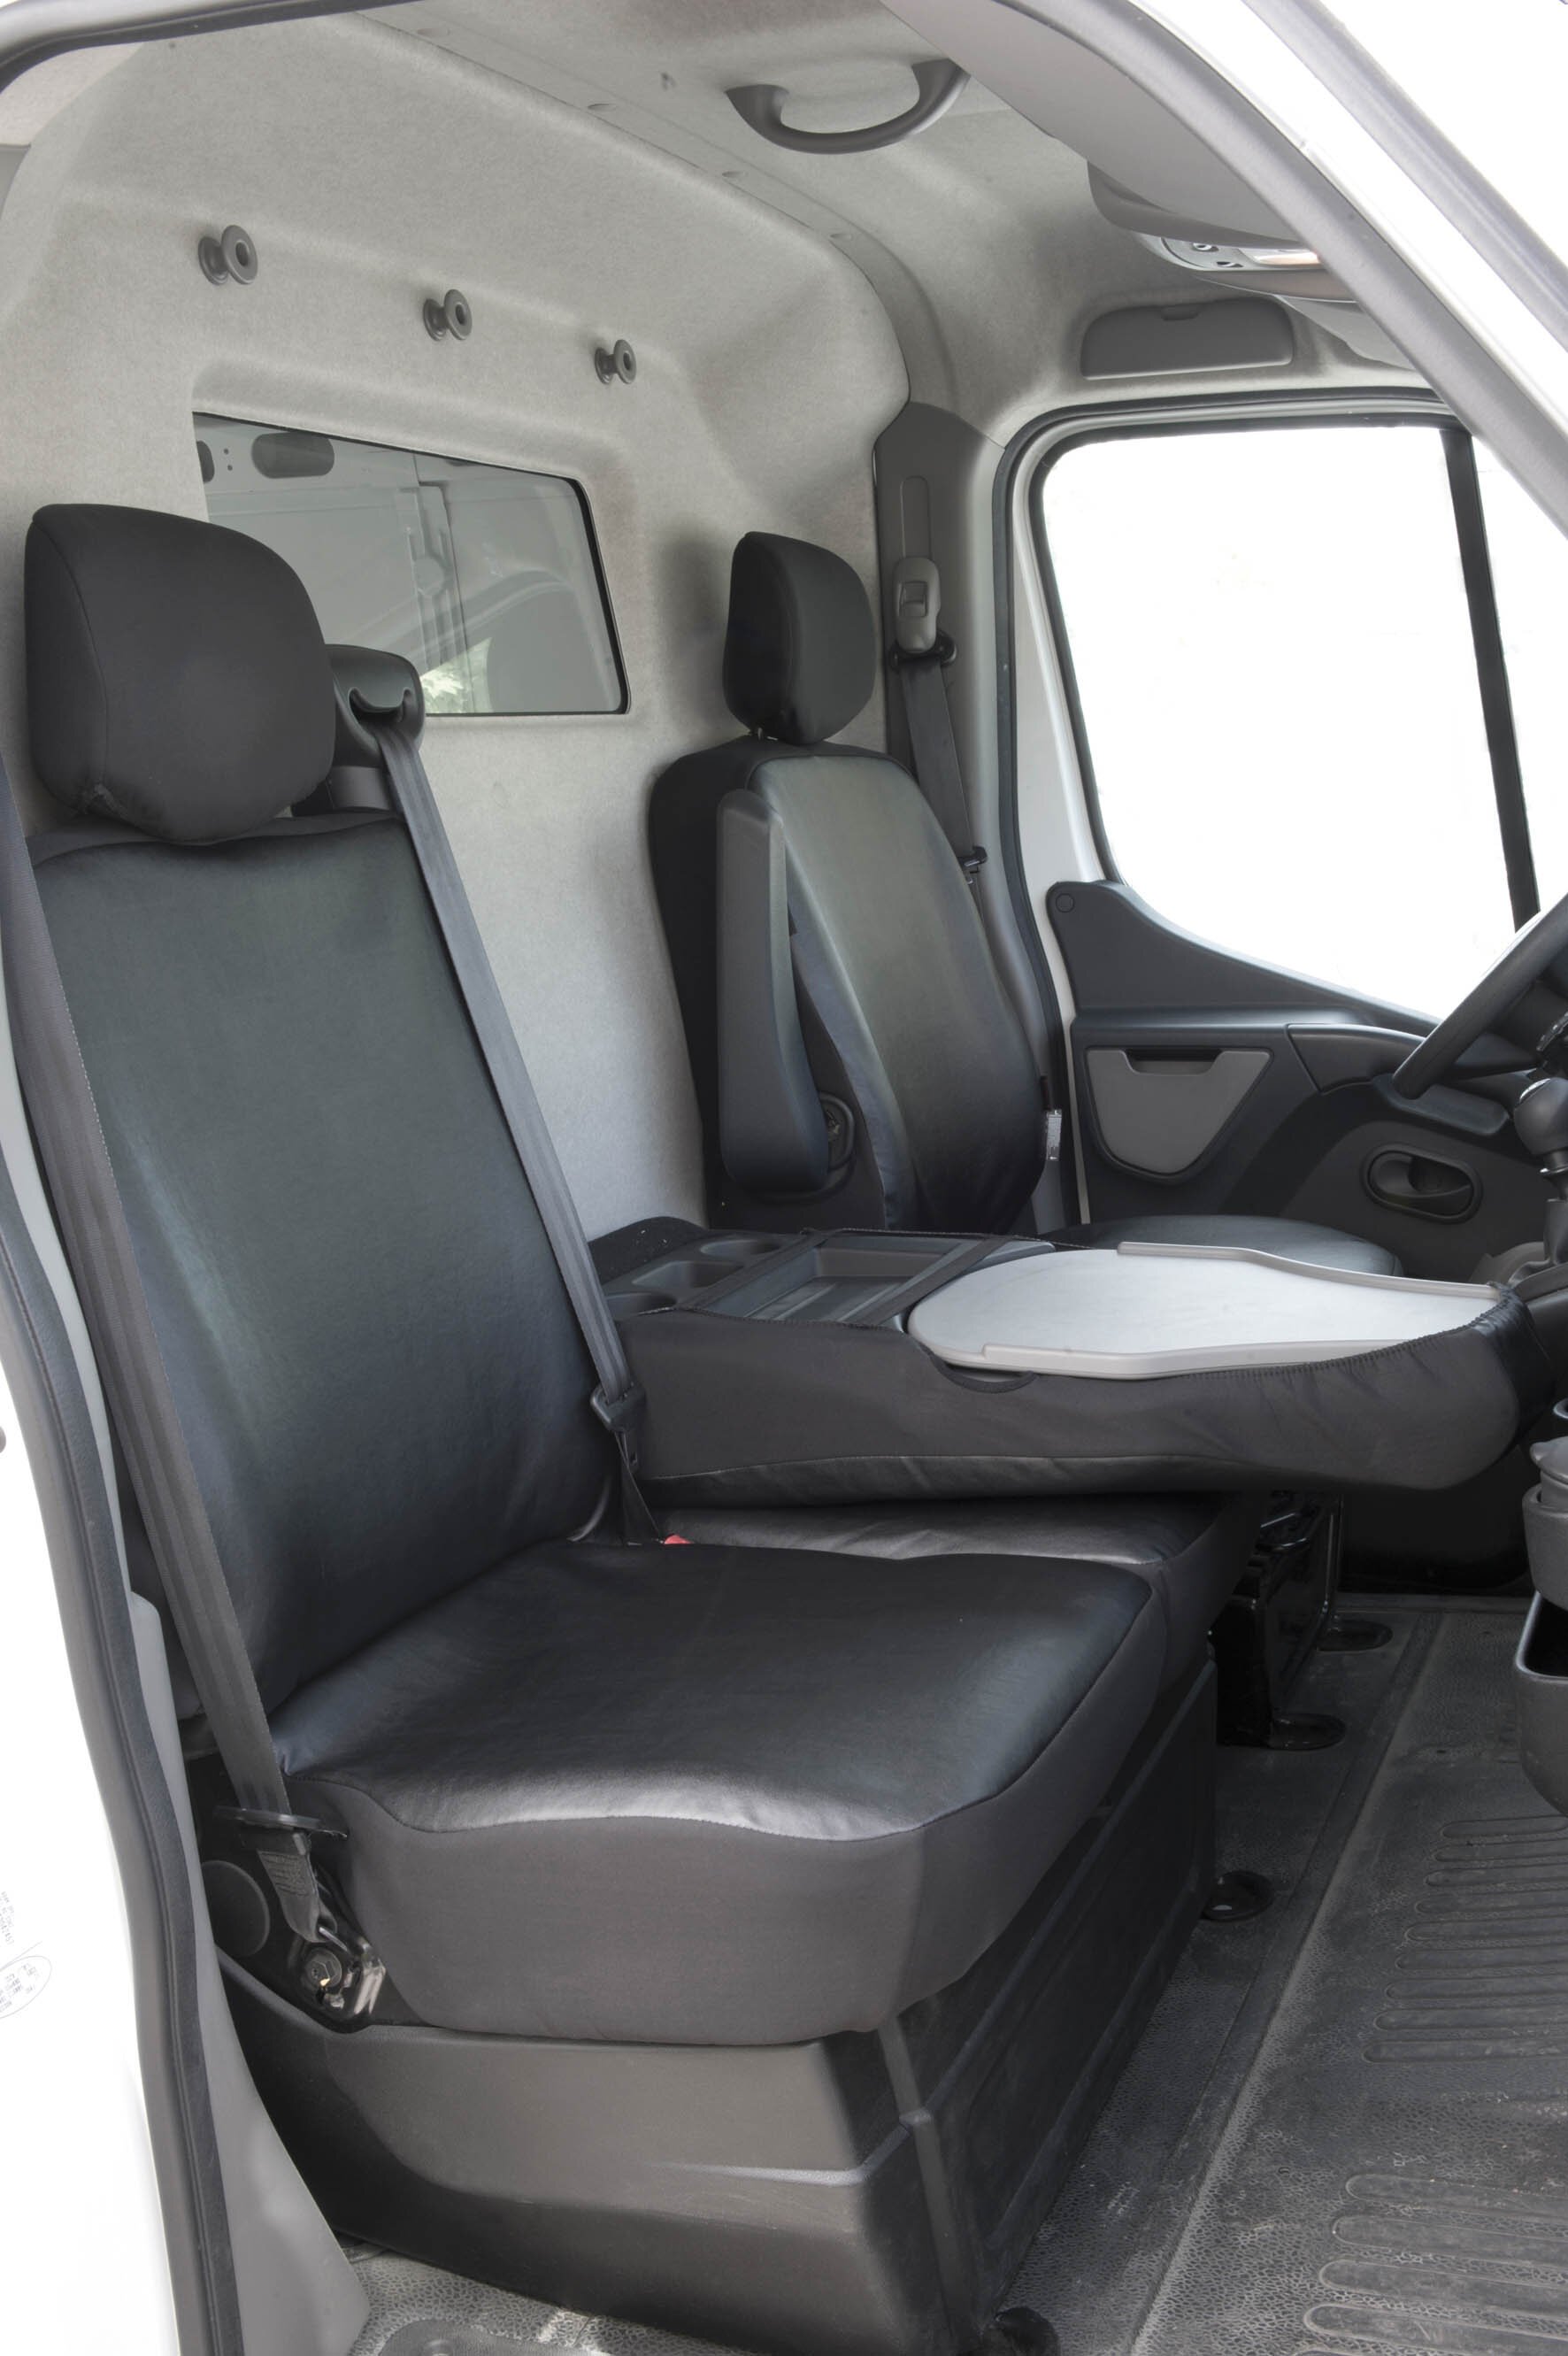 Housse de siège Transporter en simili cuir pour Opel Movano, Renault Master, Nissan Interstar, siège simple & housses de siège avant simples